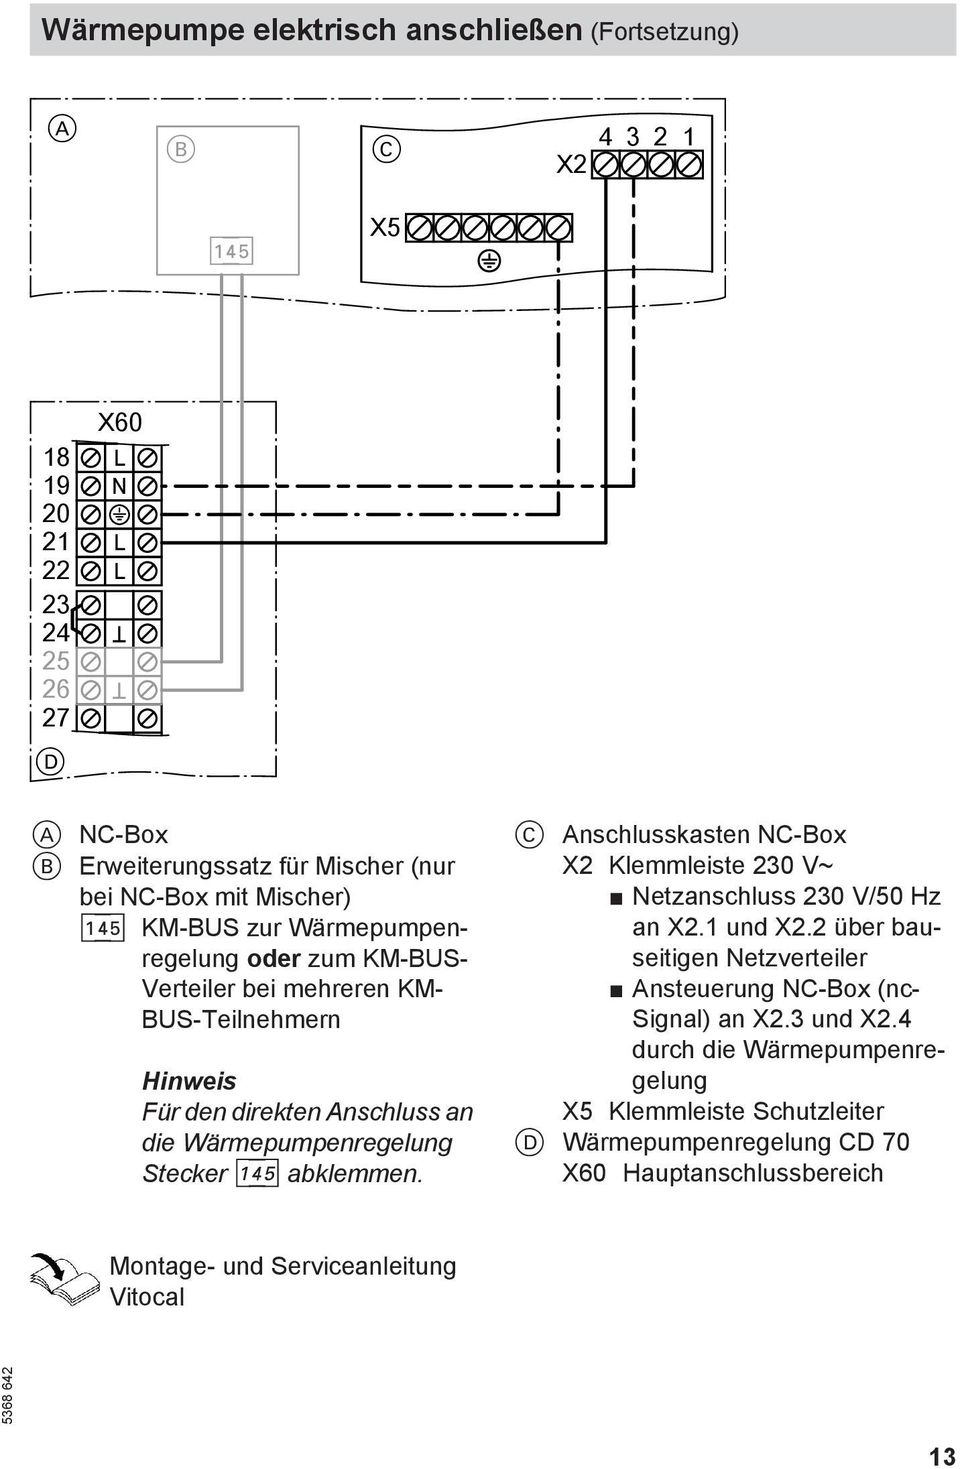 Stecker avg abklemmen. C Anschlusskasten NC-Box X2 Klemmleiste 230 V~ Netzanschluss 230 V/50 Hz an X2.1 und X2.